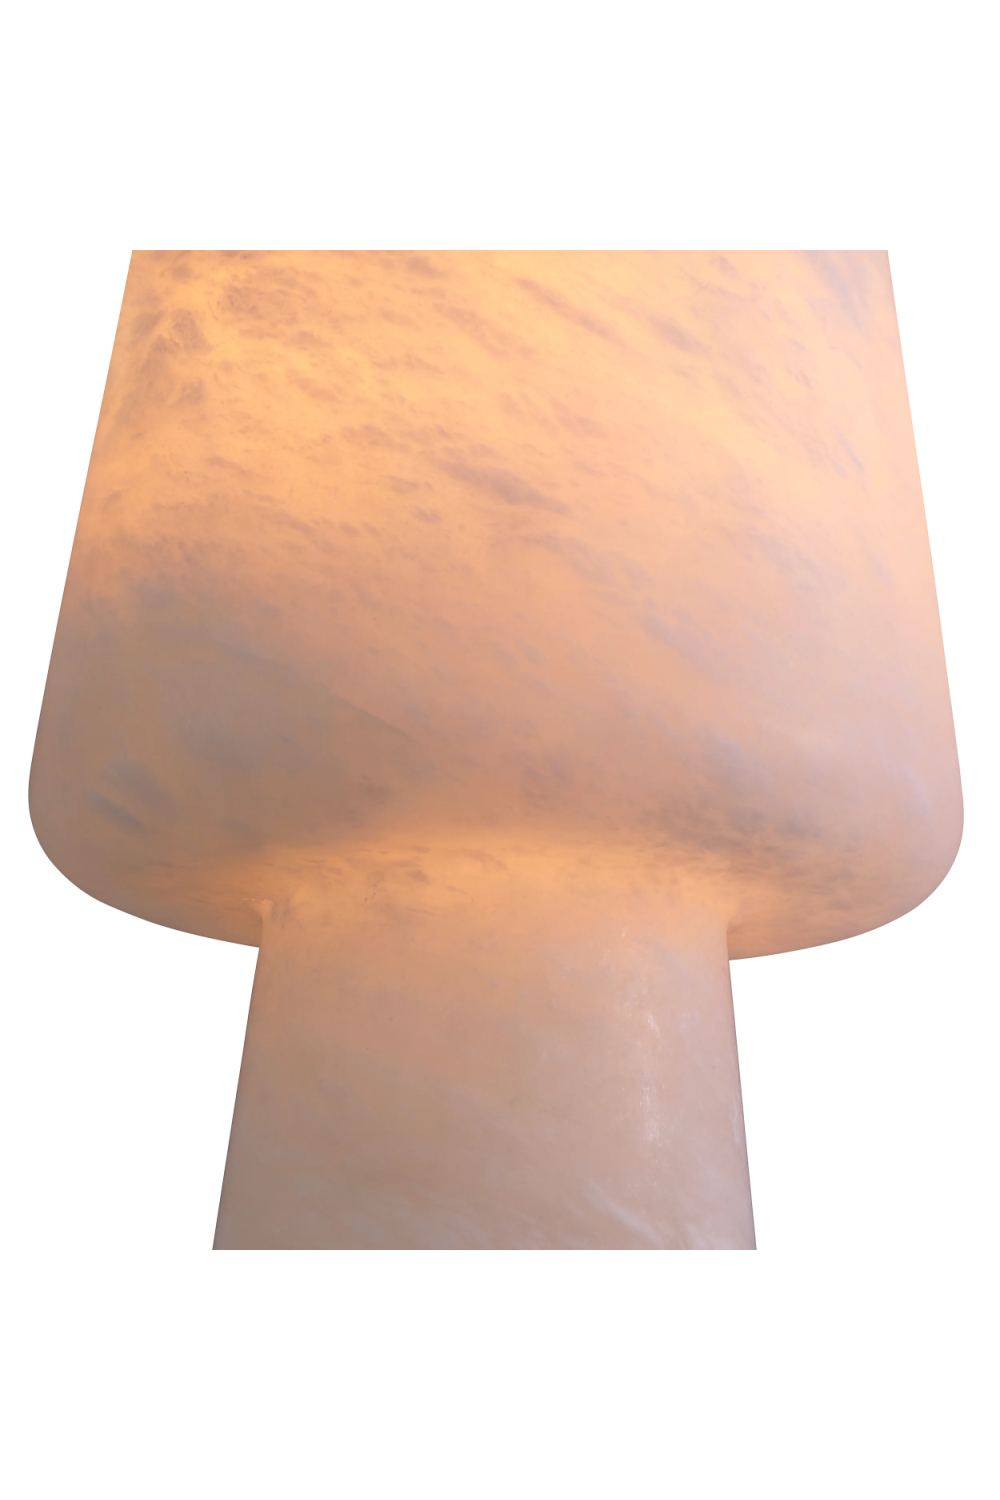 White Alabaster Table Lamp | Eichholtz Melia | Oroa.com